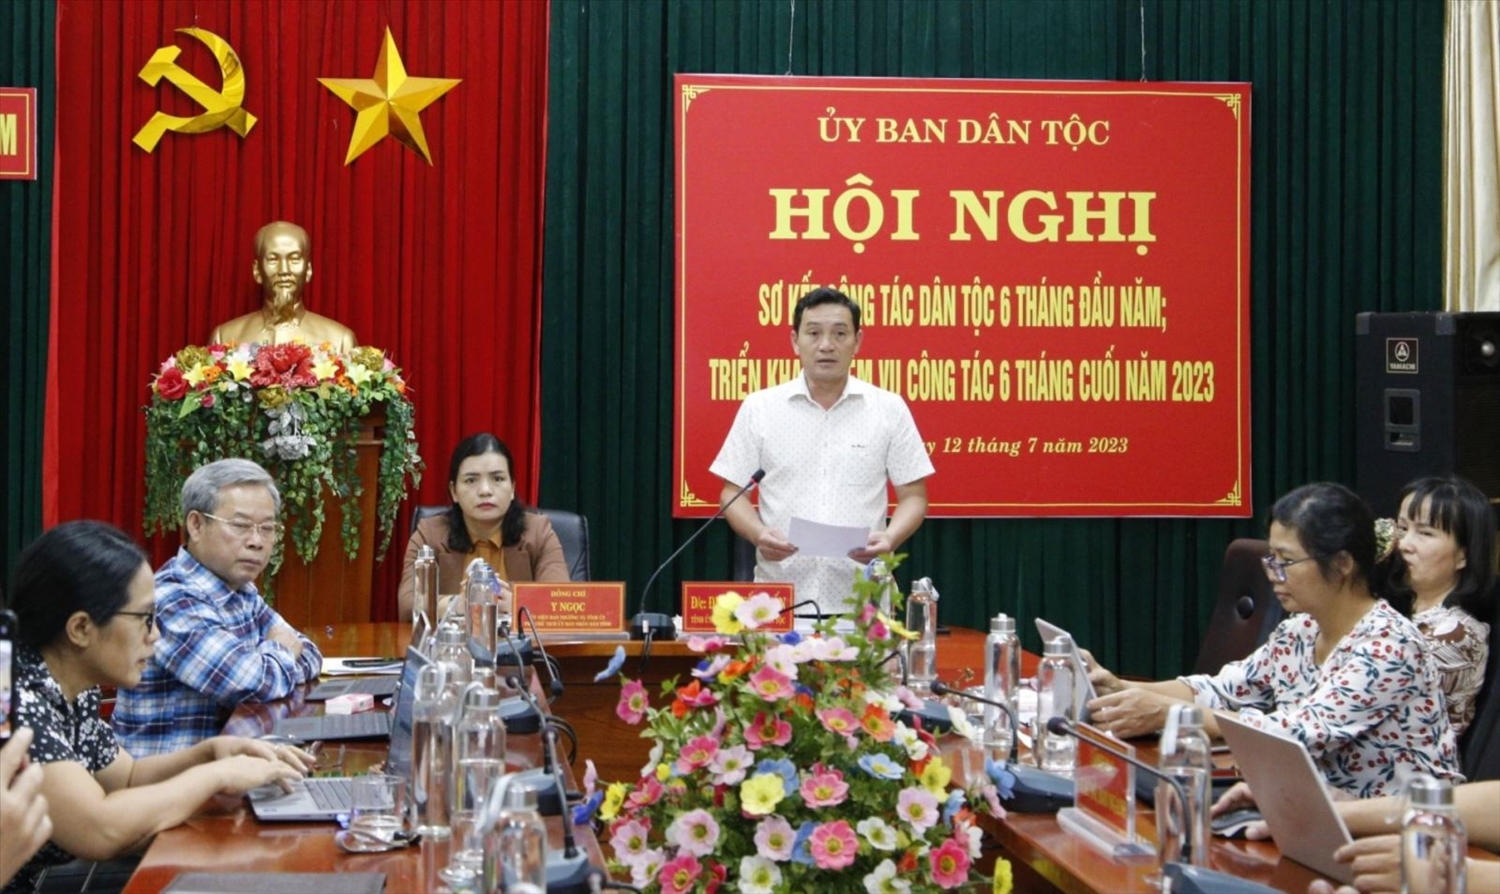 Ông Đinh Quốc Tuấn, Trưởng Ban Dân tộc tỉnh Kon Tum phát biểu tại Hội nghị trực tuyến toàn quốc sơ kết công tác dân tộc 6 tháng đầu năm và triển khai nhiệm vụ công tác 6 tháng cuối năm 2023 từ điểm cầu tỉnh Kon Tum